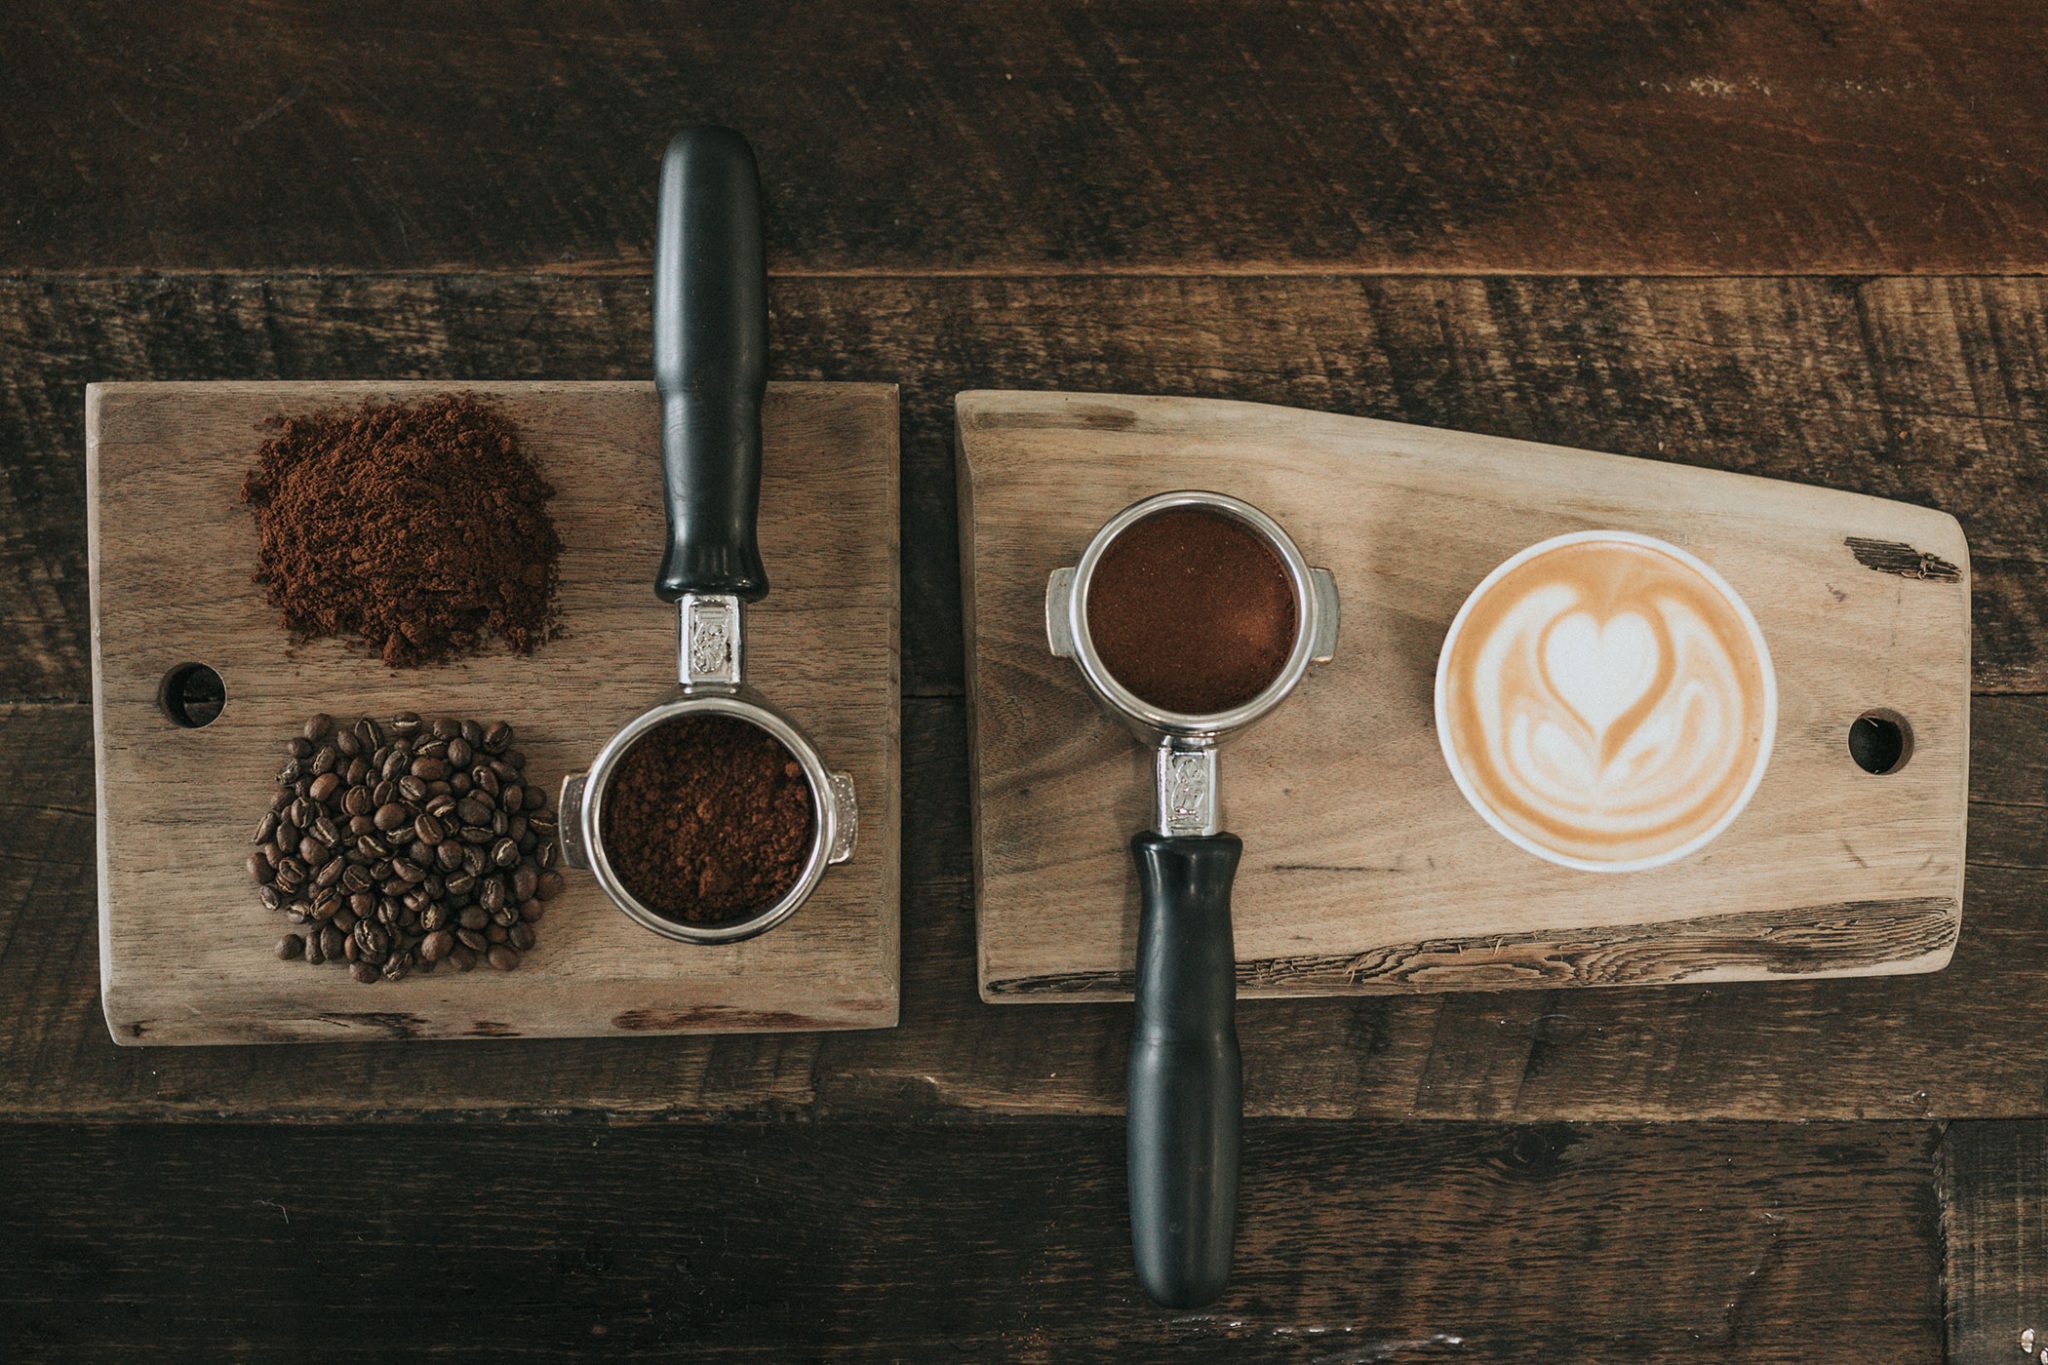 Kaffee-Mahlen-und-Aufbereitung-Fotocredit-Nathan-Dumlao